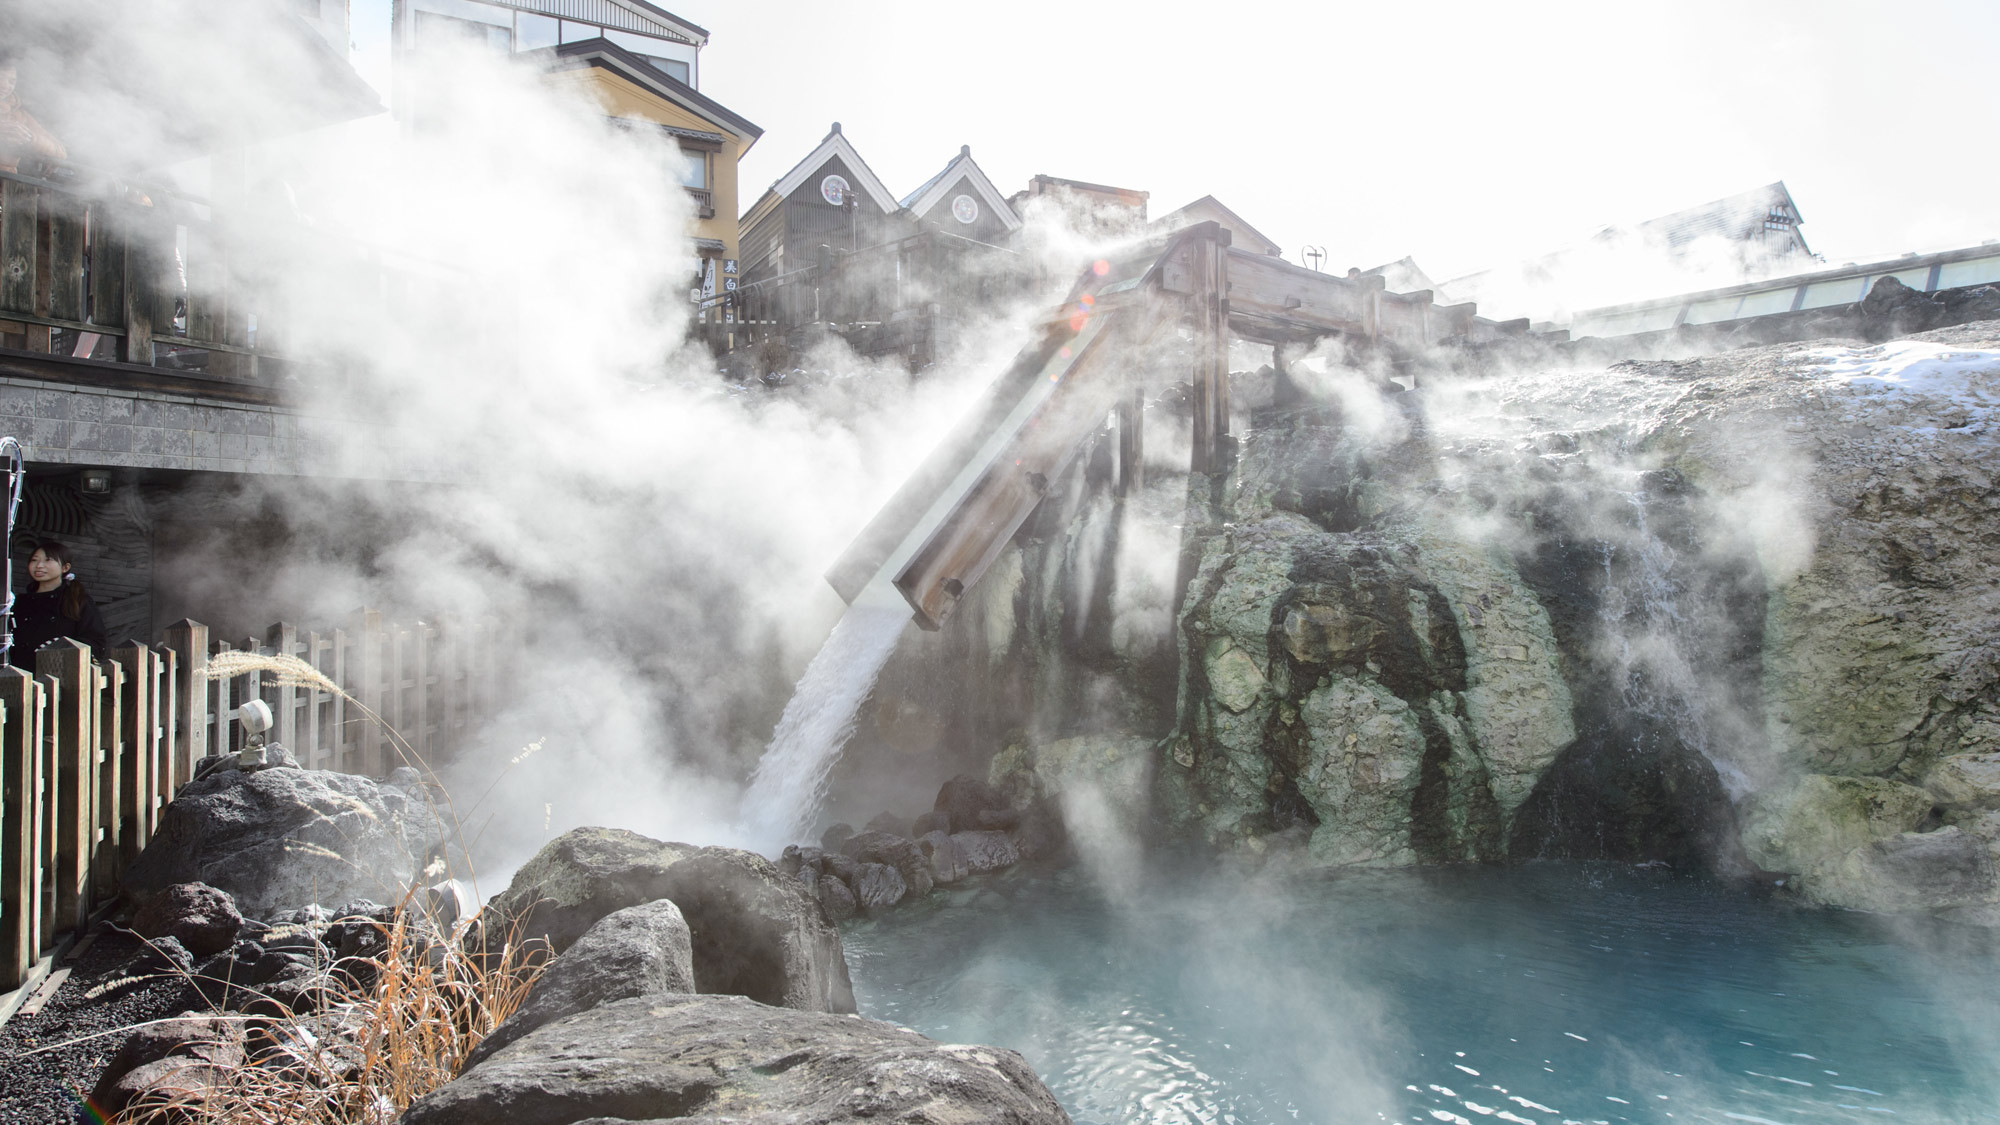 【湯畑】当館目の前の草津温泉のシンボル「湯畑」では豊富な湯が溢れております。